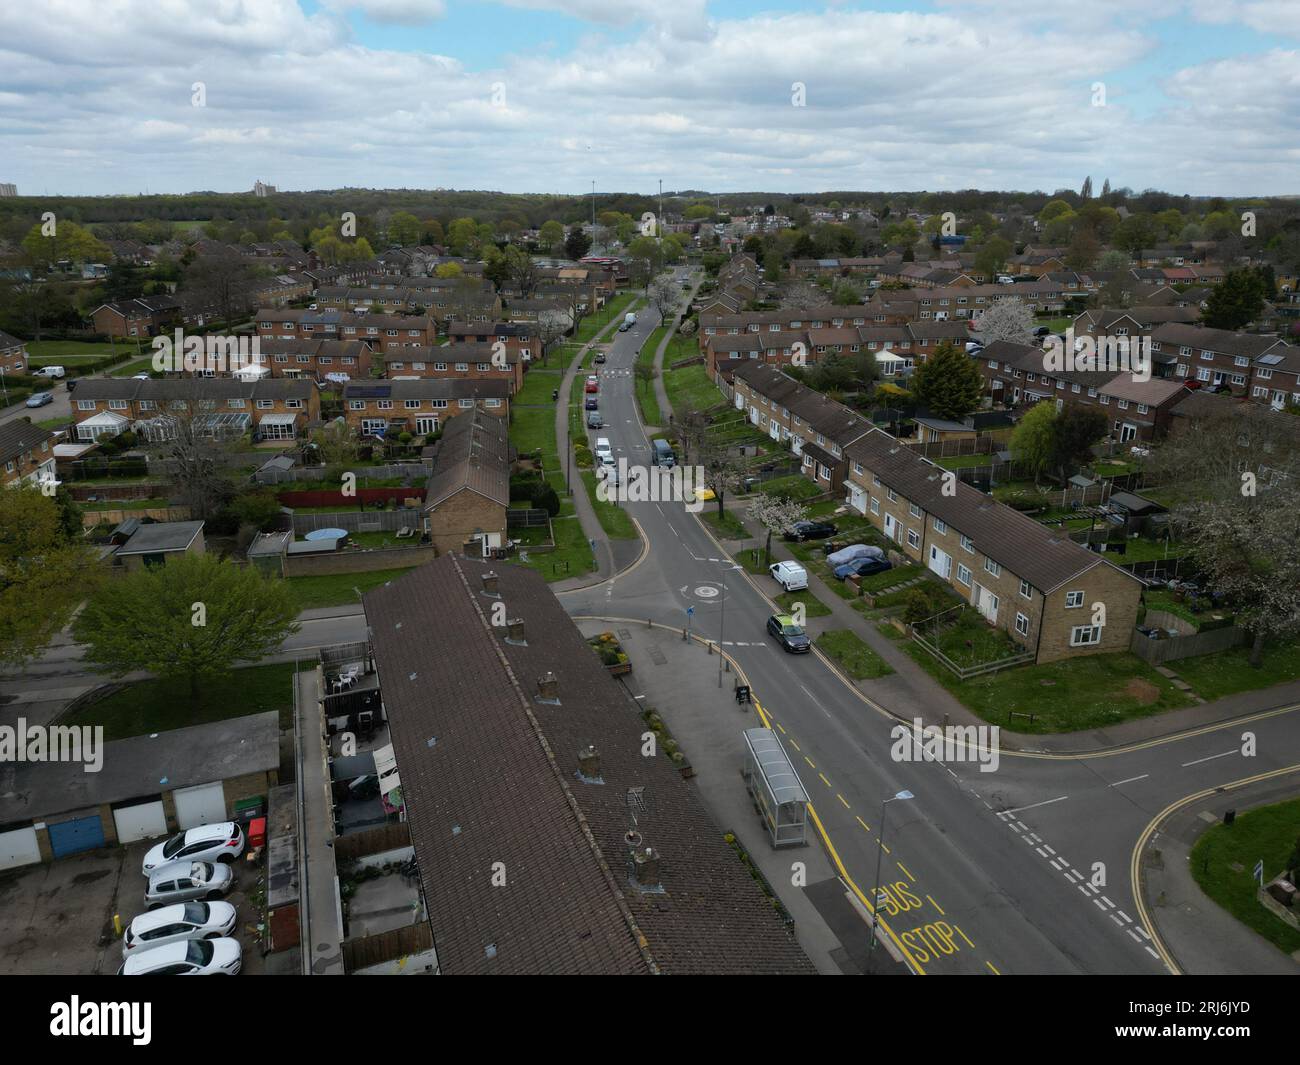 Une vue aérienne d'un quartier résidentiel à Stevenage, en Angleterre. Banque D'Images